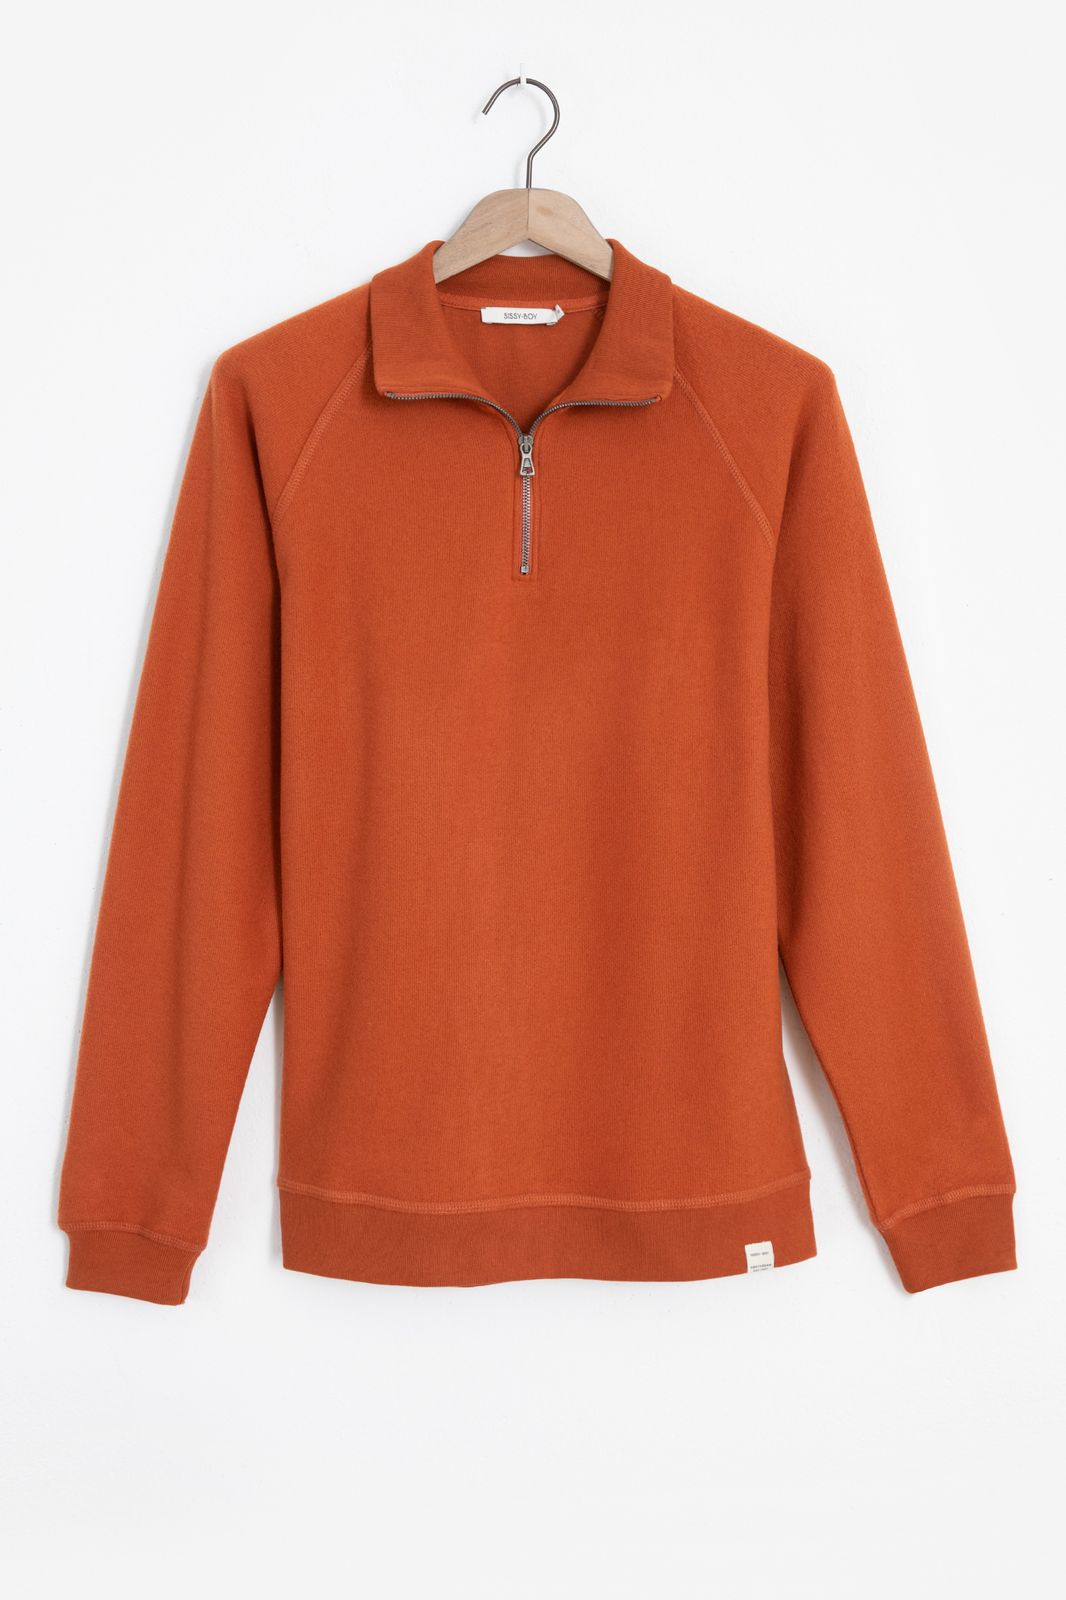 Sweater mit Reißverschluss - orange